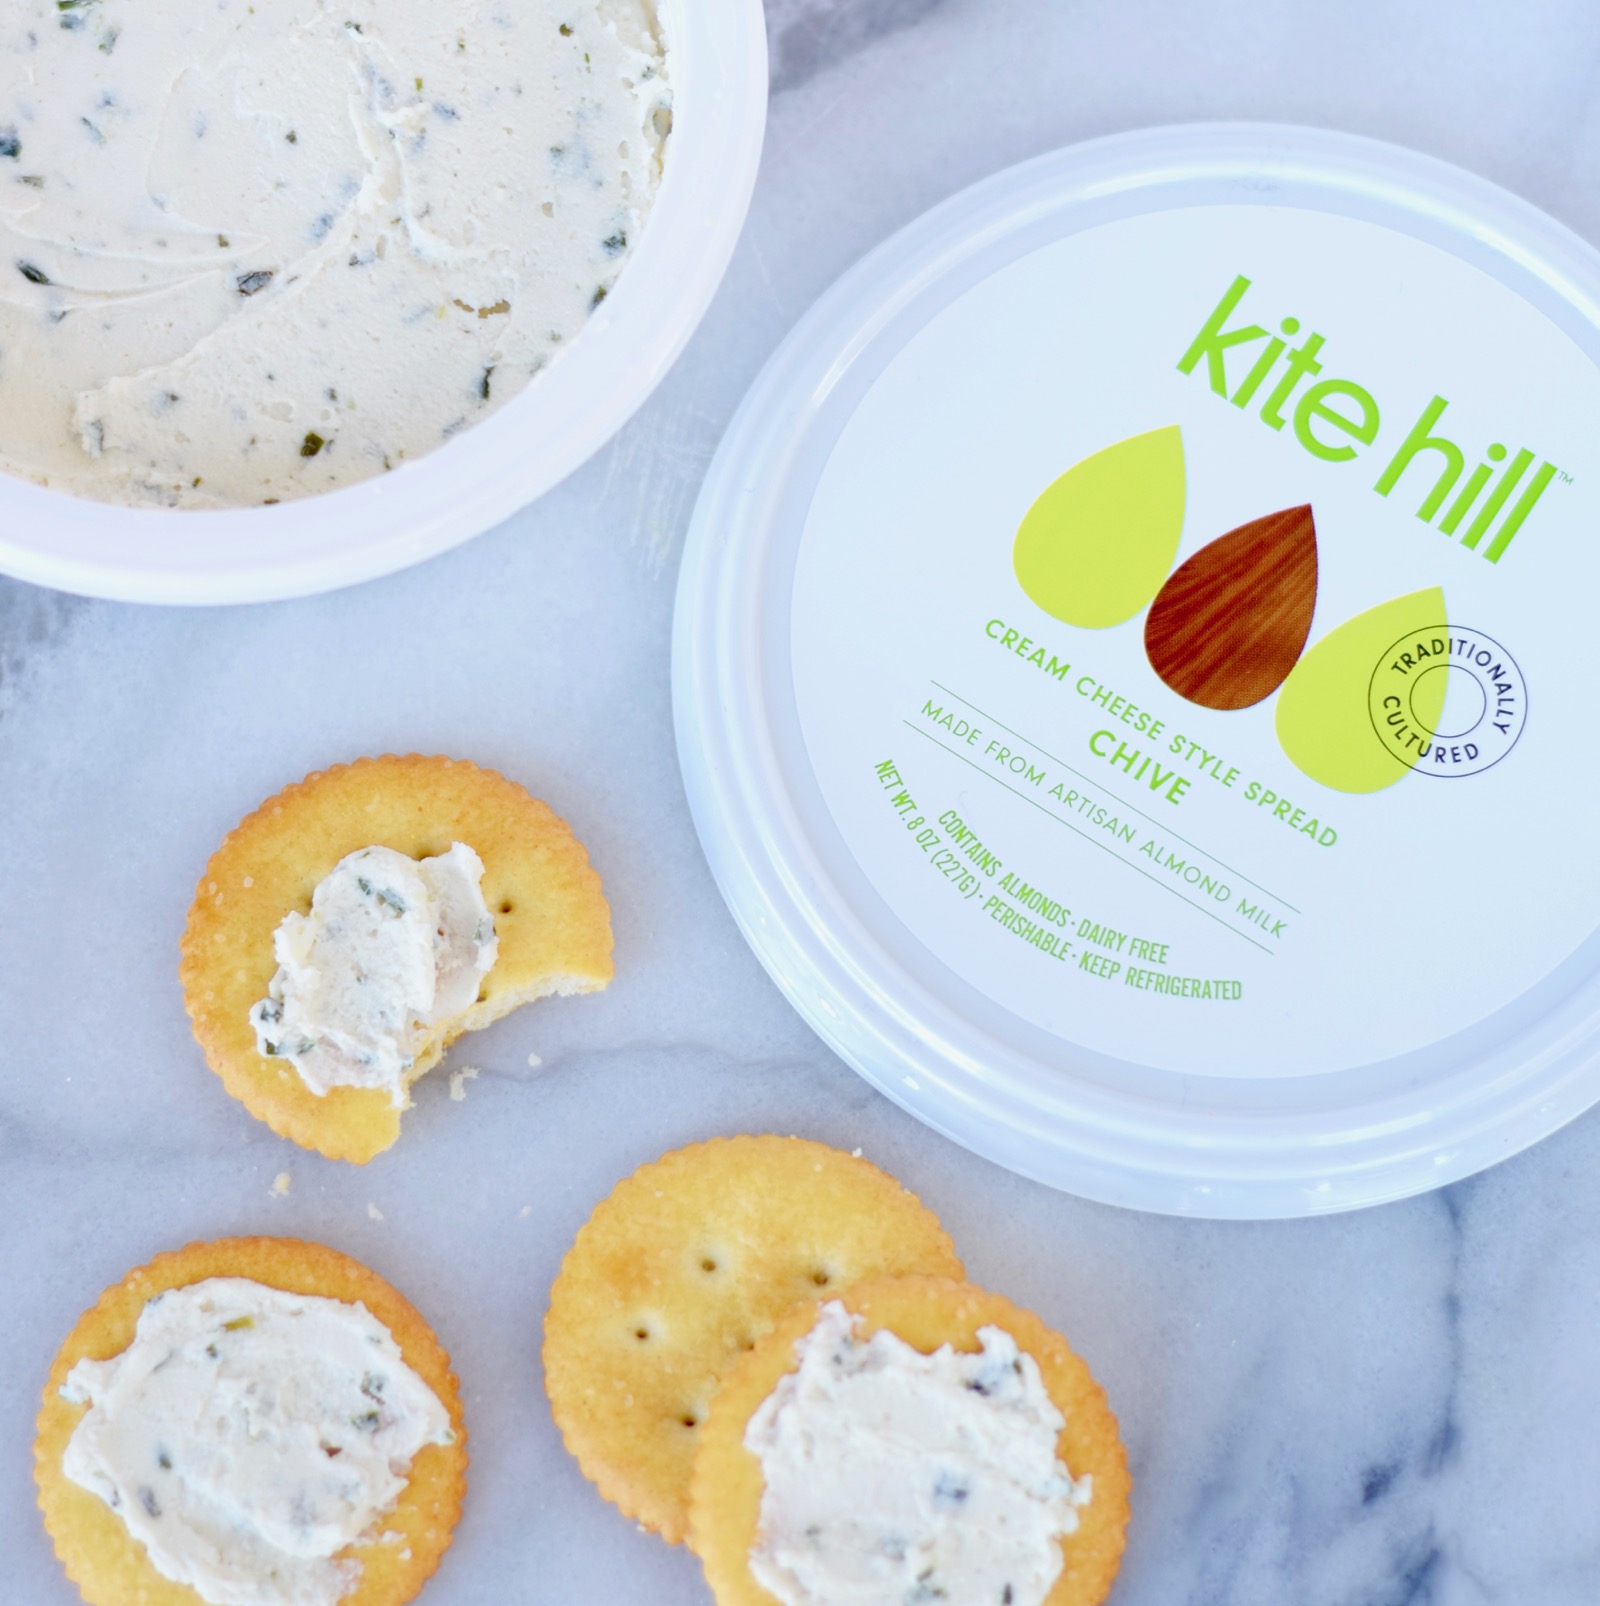 Kite Hill vegan cream cheese